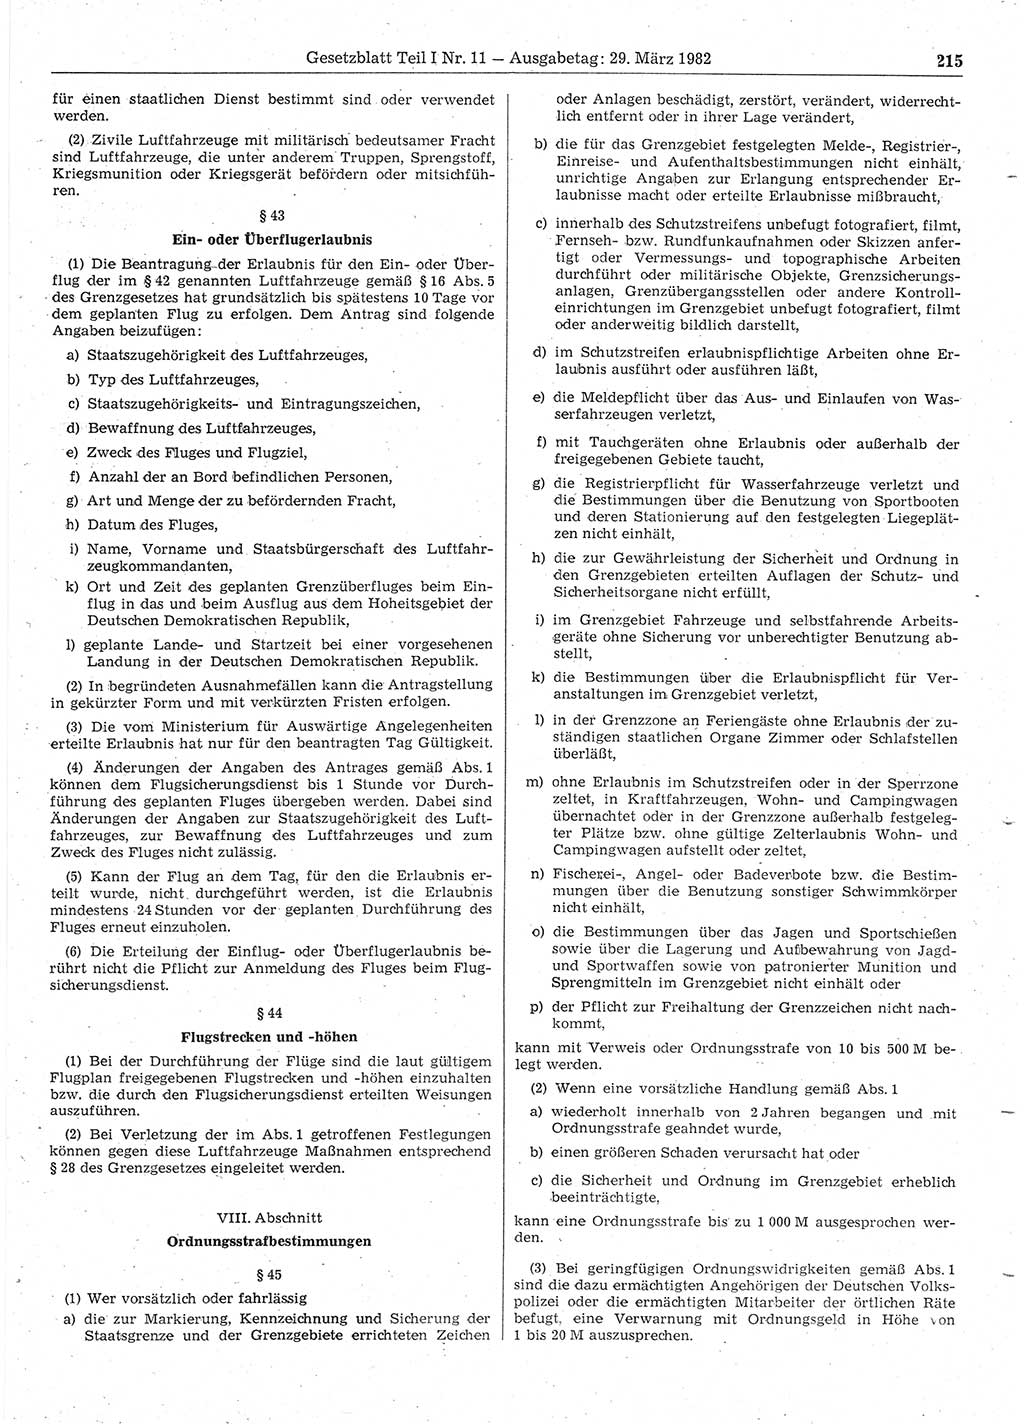 Gesetzblatt (GBl.) der Deutschen Demokratischen Republik (DDR) Teil Ⅰ 1982, Seite 215 (GBl. DDR Ⅰ 1982, S. 215)